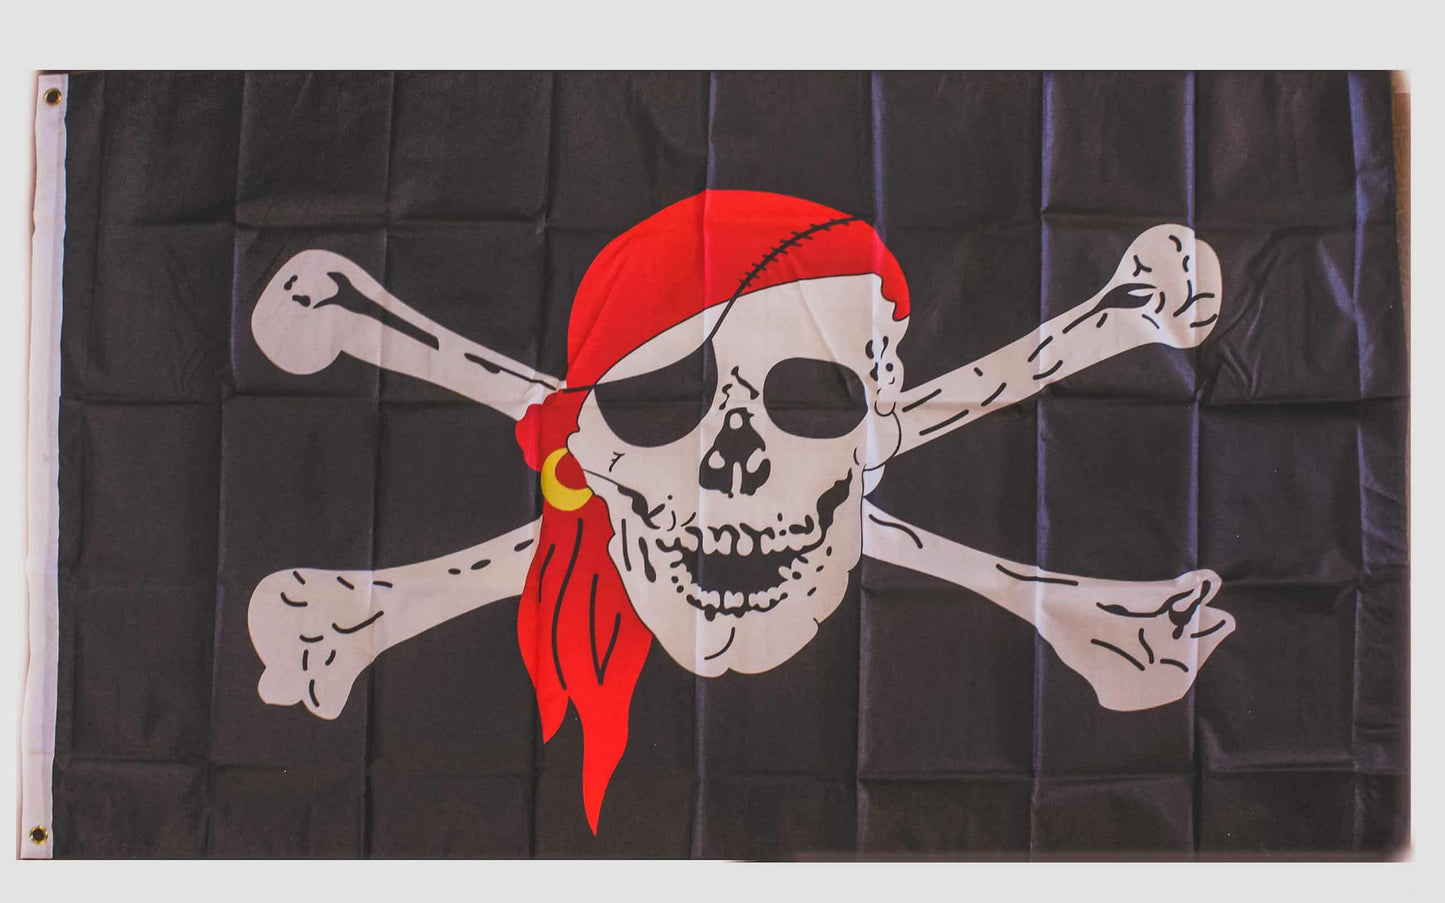 Flaggen in 90x150 cm | Deutschland, Baden, Pirat, Europa